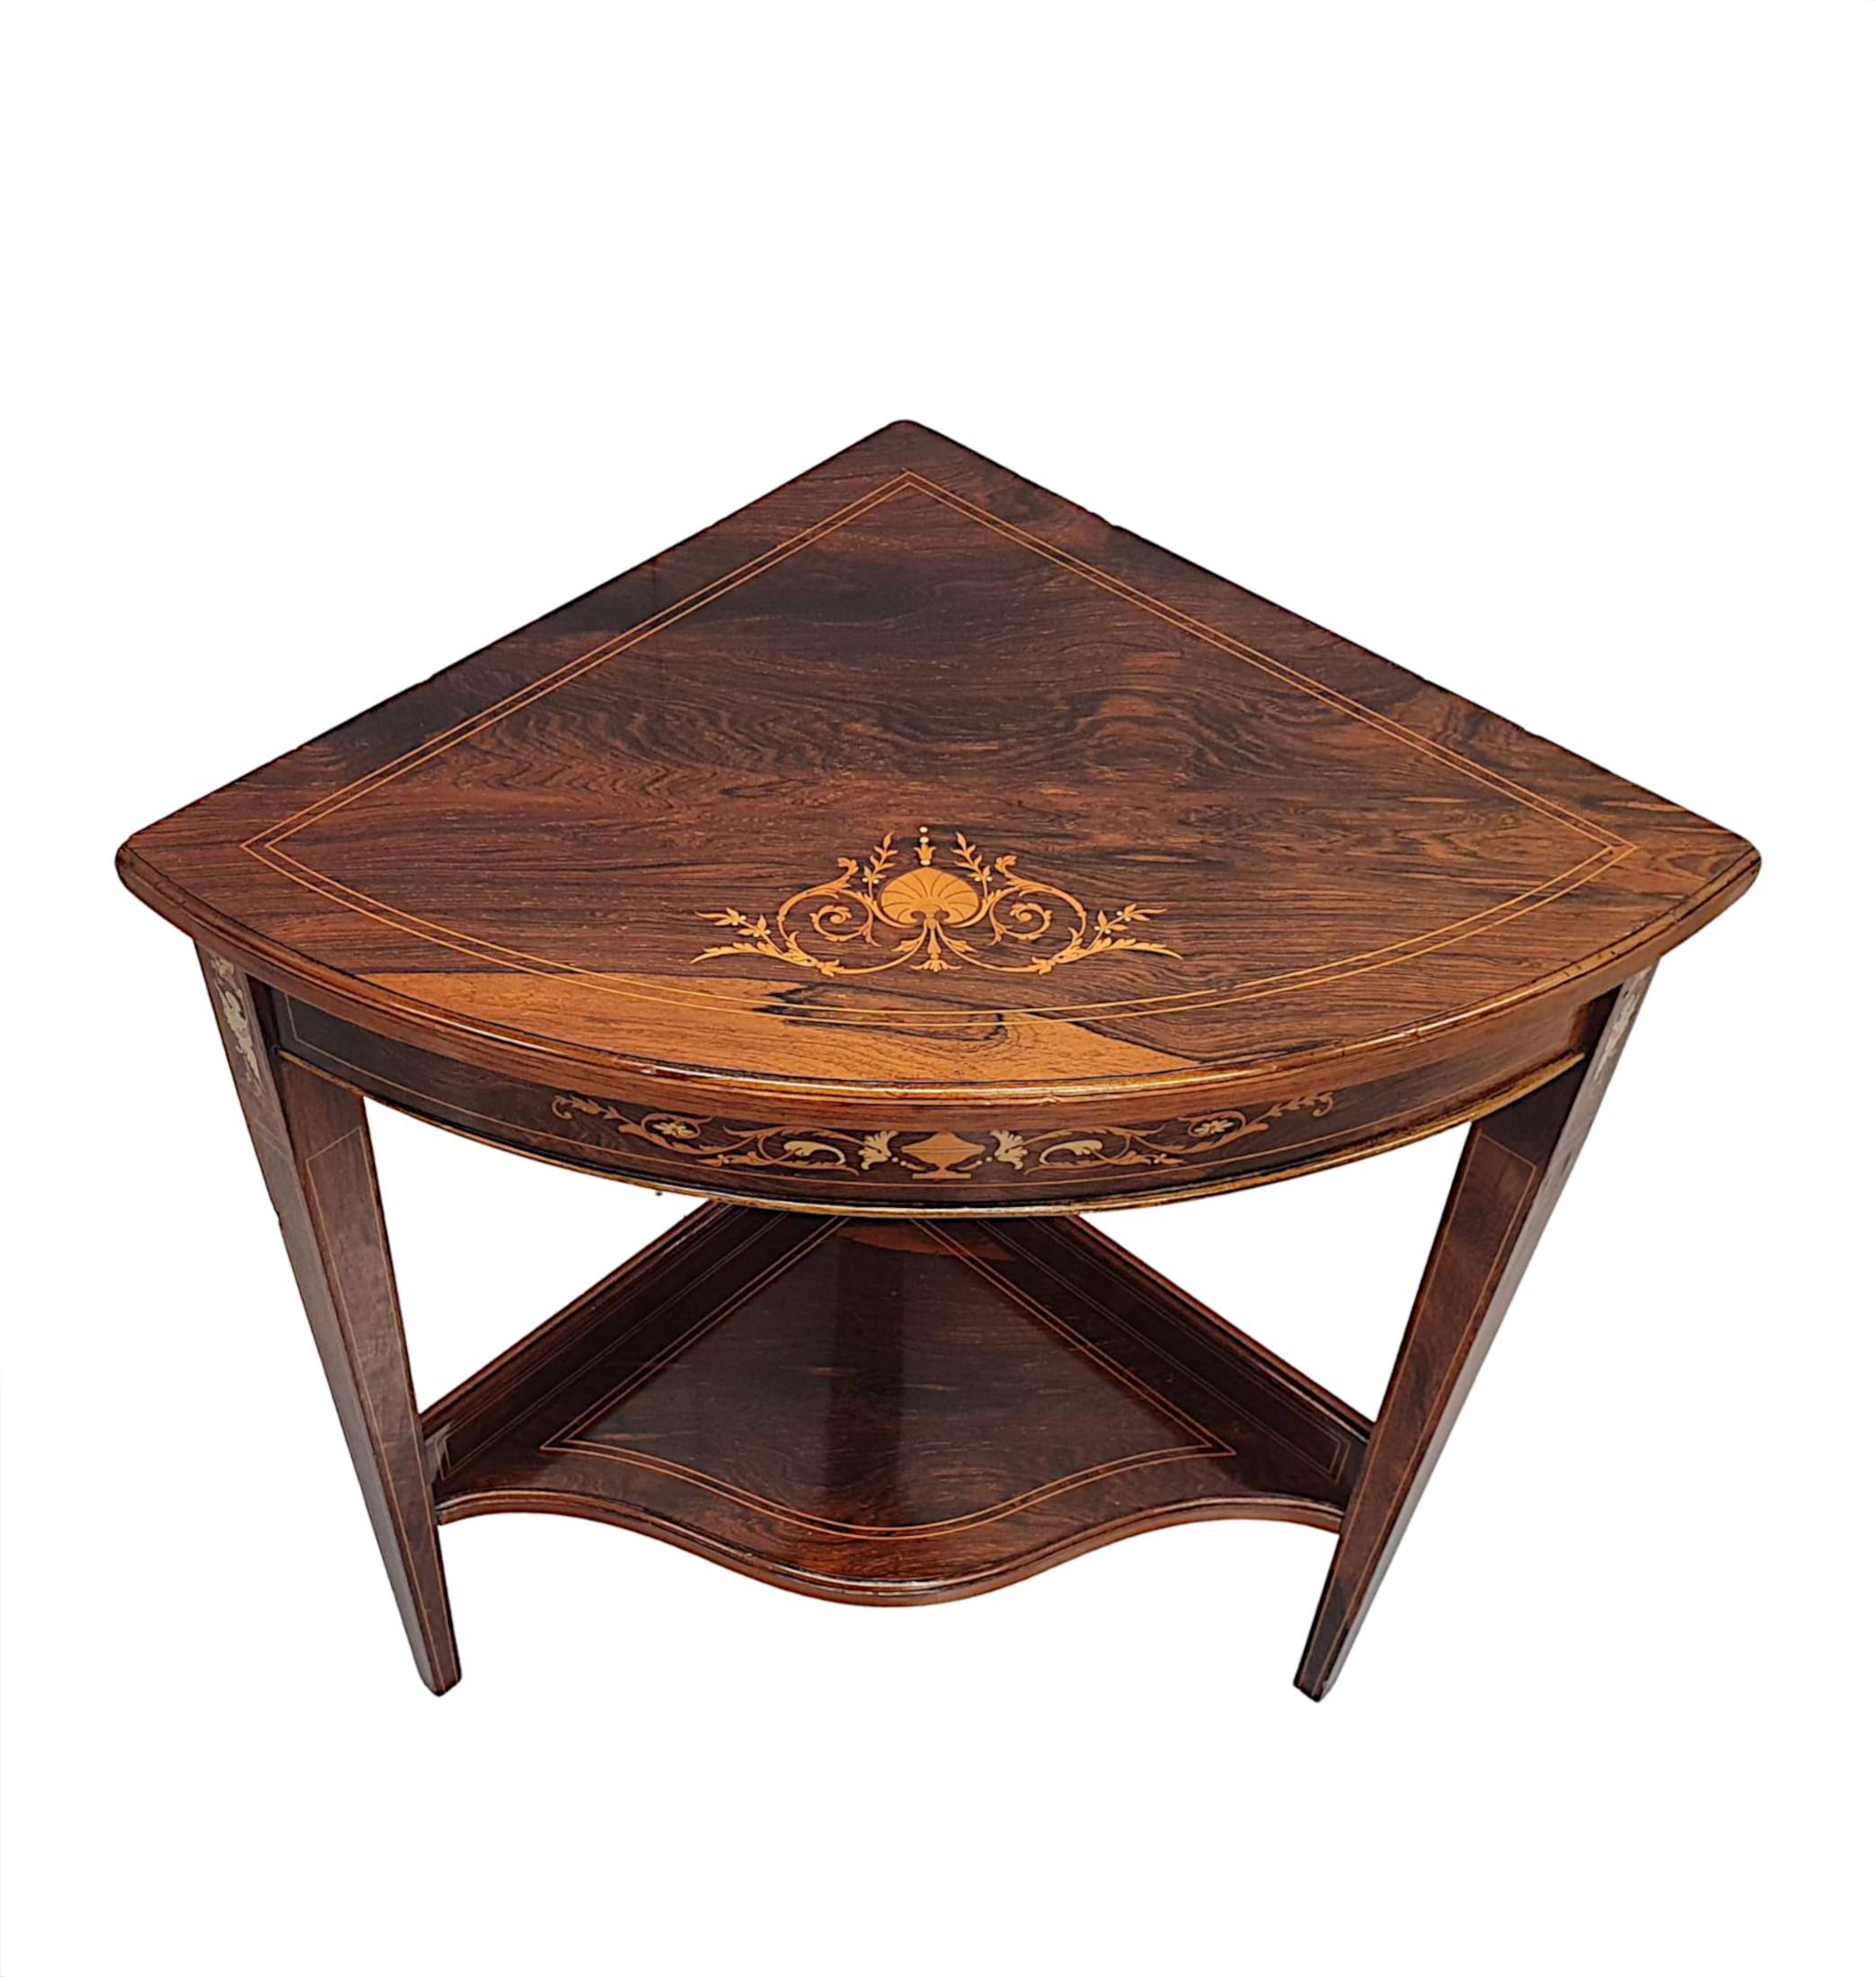 Magnifique table d'angle en bois fruitier de l'époque édouardienne, d'une qualité fabuleuse, finement sculptée, richement patinée et incrustée au trait d'exquis motifs de marqueterie néoclassique sur l'ensemble du plateau.  Le plateau en marqueterie